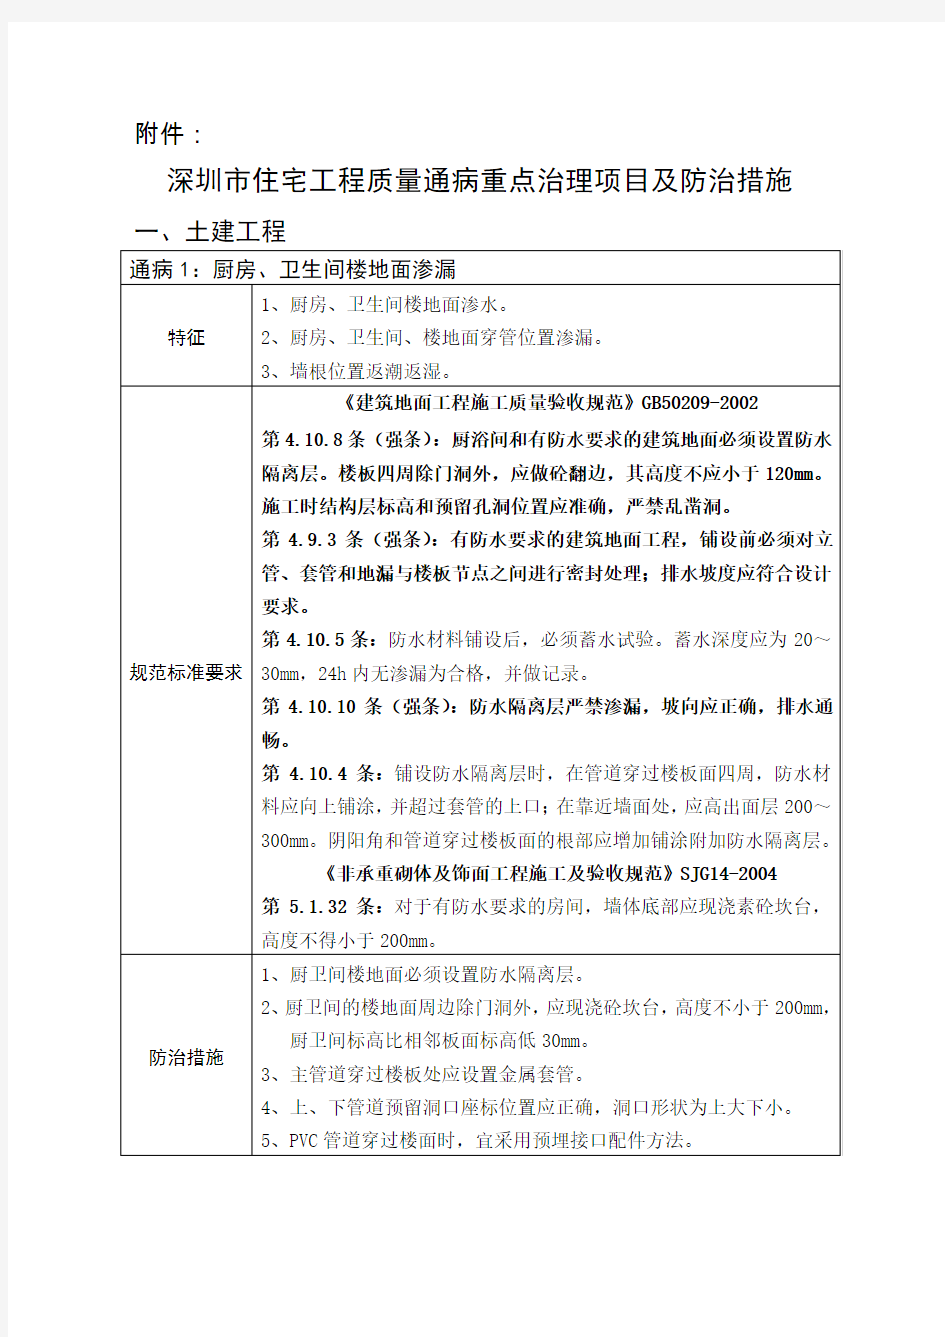 深圳市住宅工程质量通病重点治理项目及防治措施